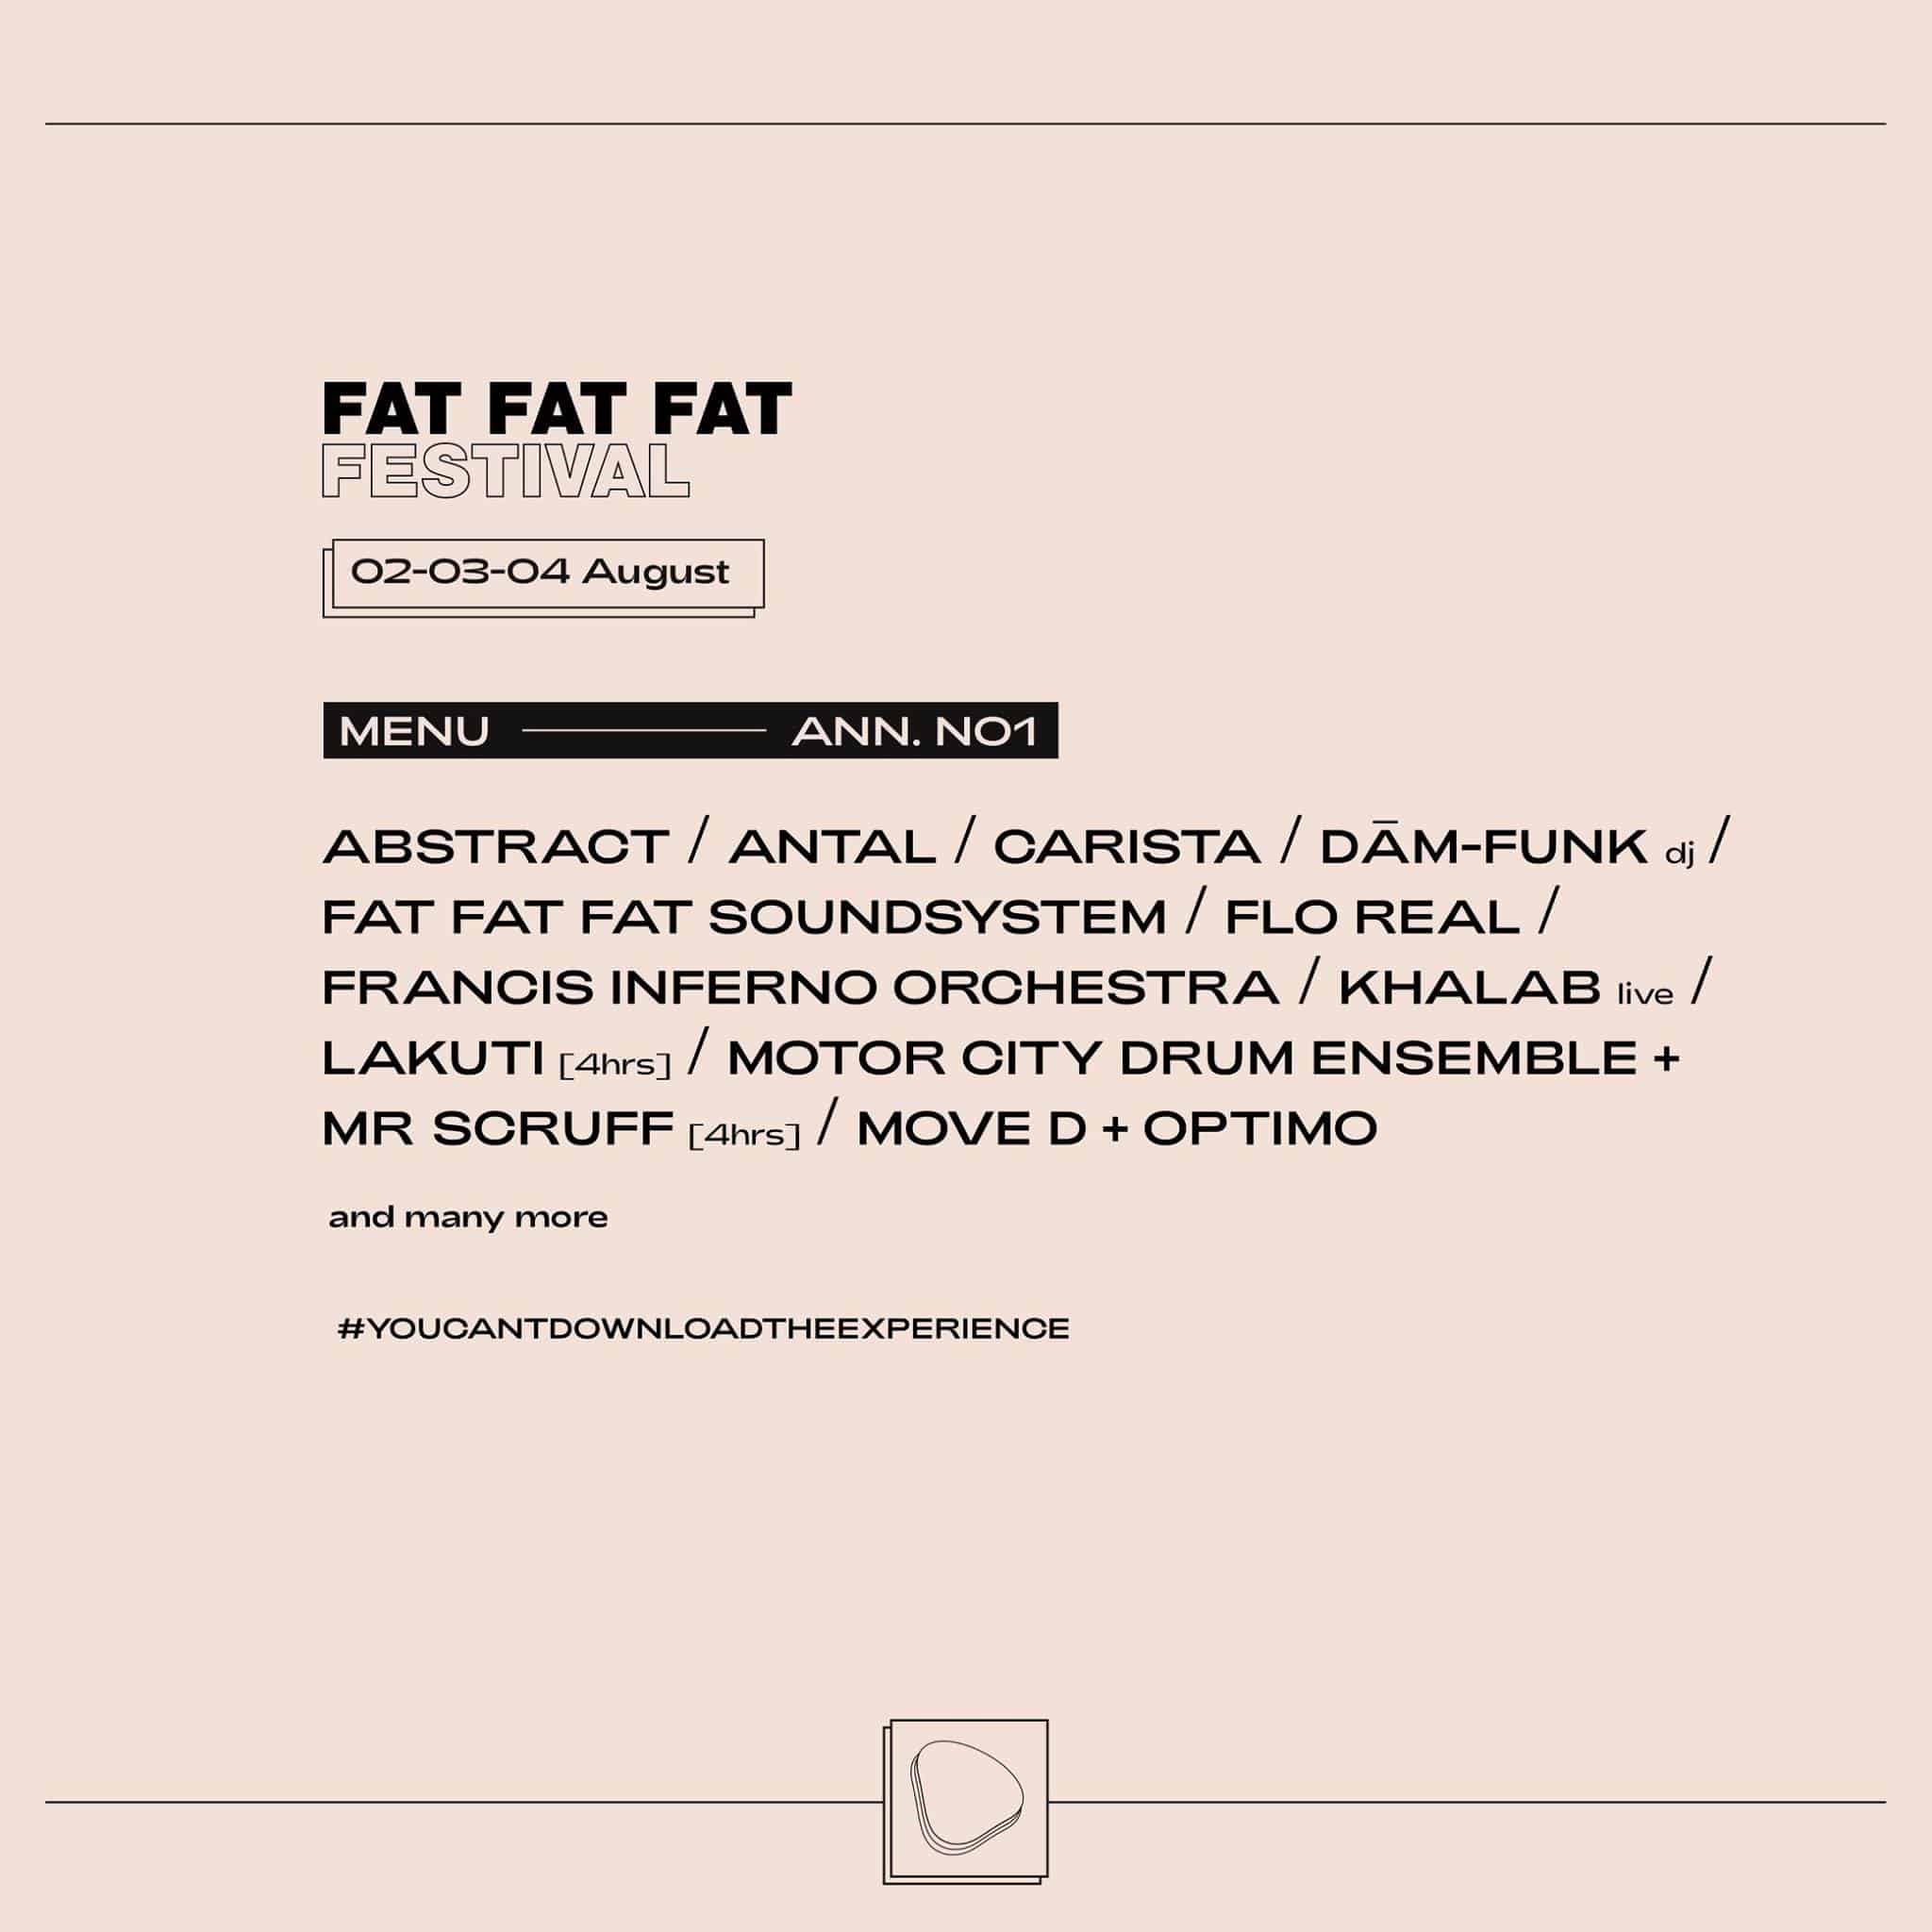 FAT FAT FAT Festival 2019 - Lineup